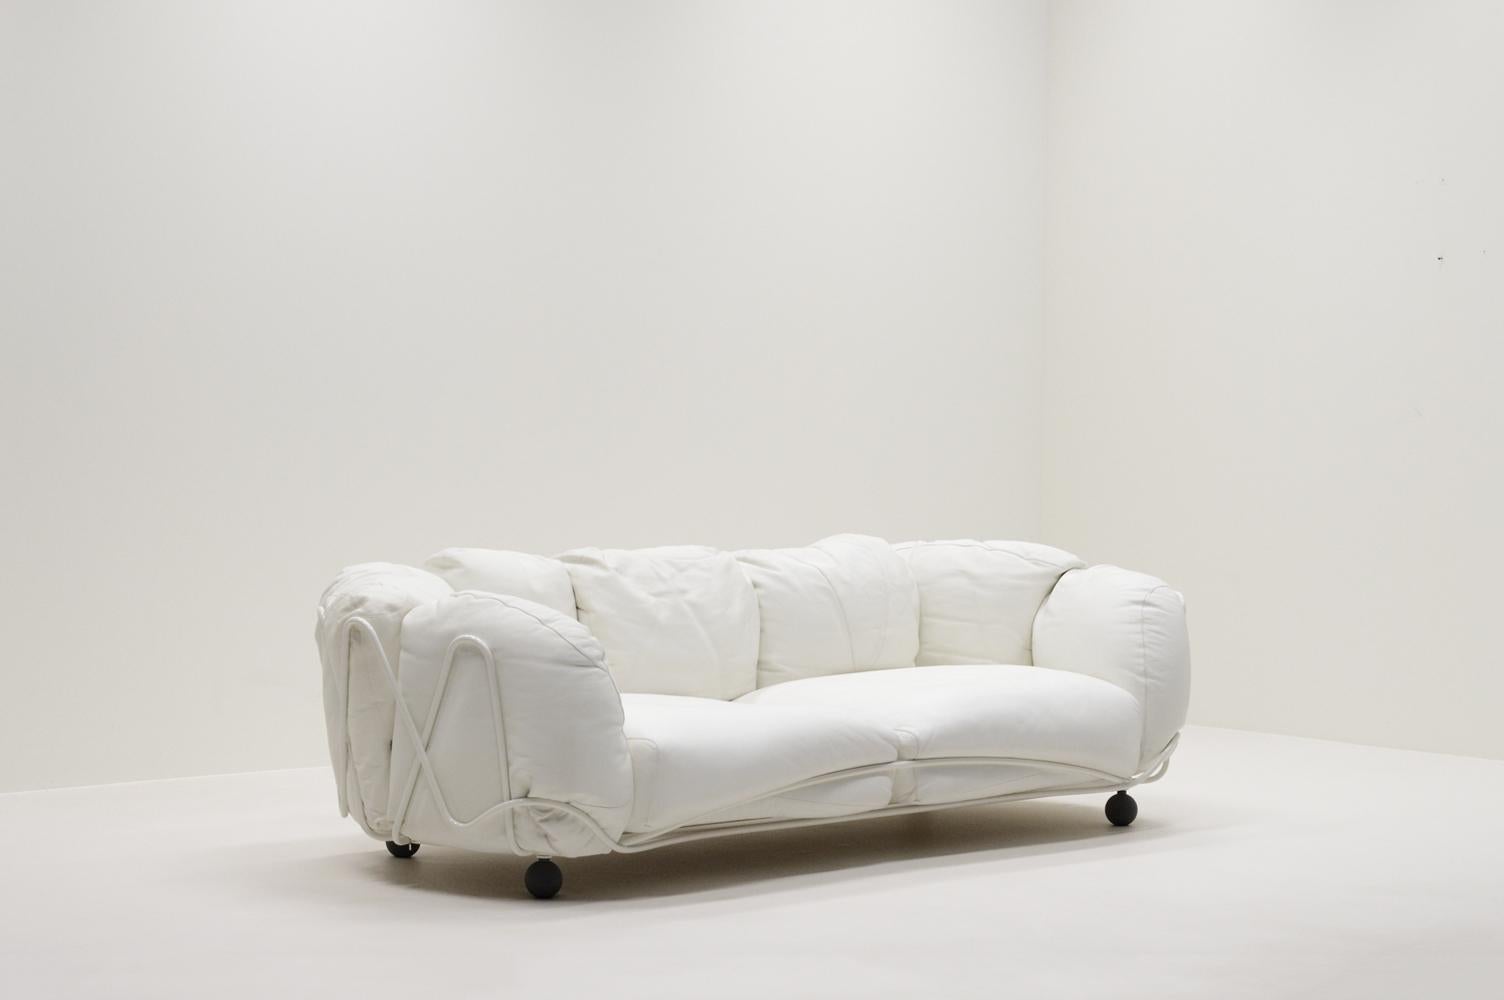 Seltenes Corbeille Lounge Sofa von Francesco Binfaré für Edra, Italien. 3-Sitzer-Sofa mit weißer, korbförmig geflochtener Metallstruktur, gefüllt mit weißen, informellen, lose bezogenen Lederkissen. Handgefertigt und hochwertiges Leder. Die